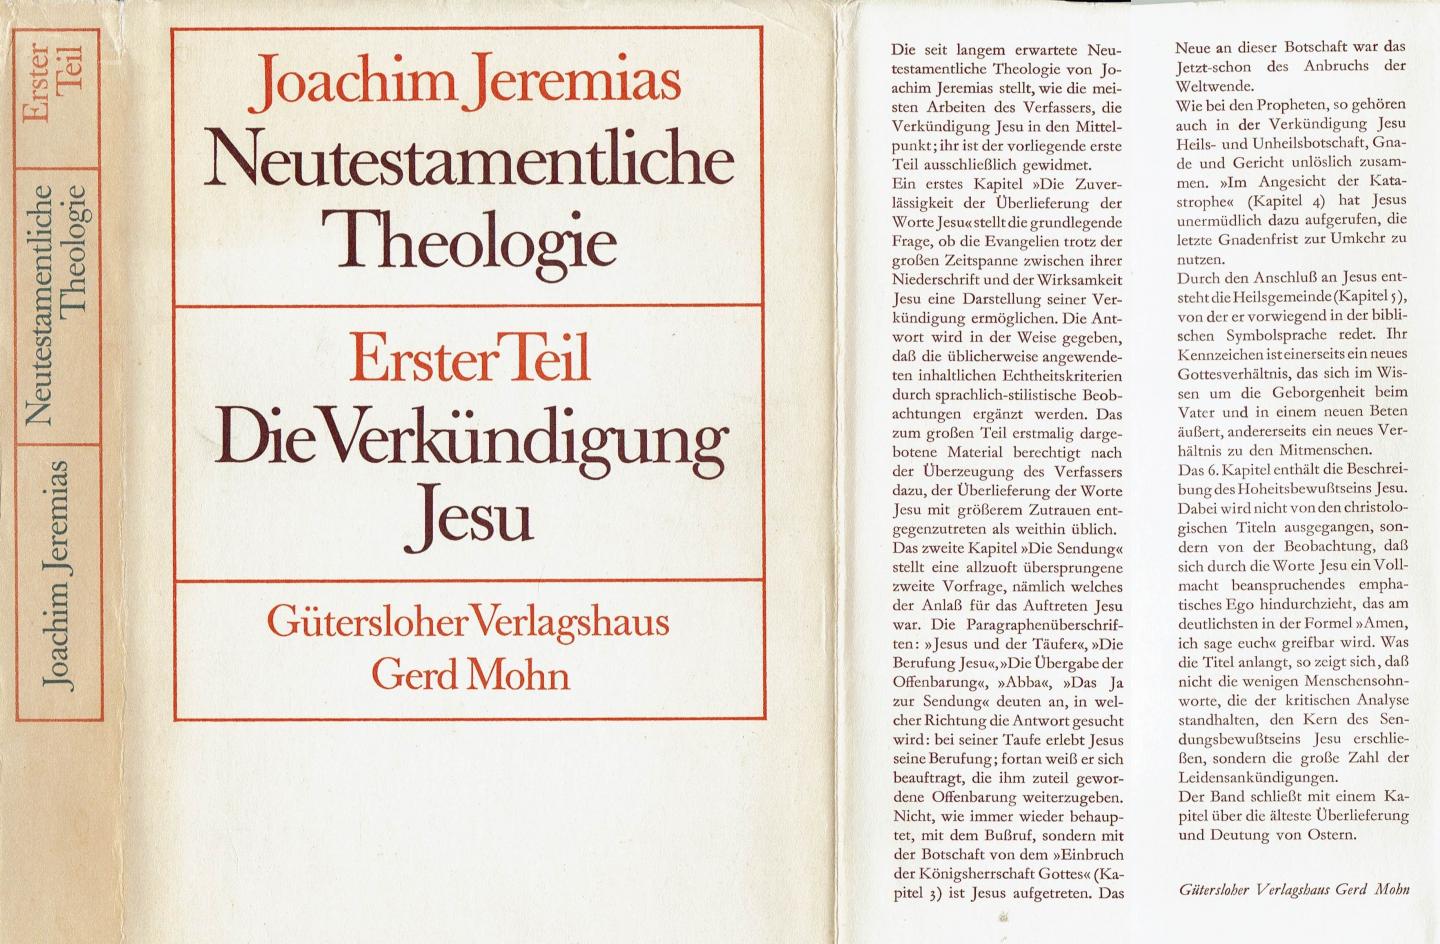 JEREMIAS, Joachim - Neutestamentliche Theologie - Erster Teil - Die Verkündigung Jesu